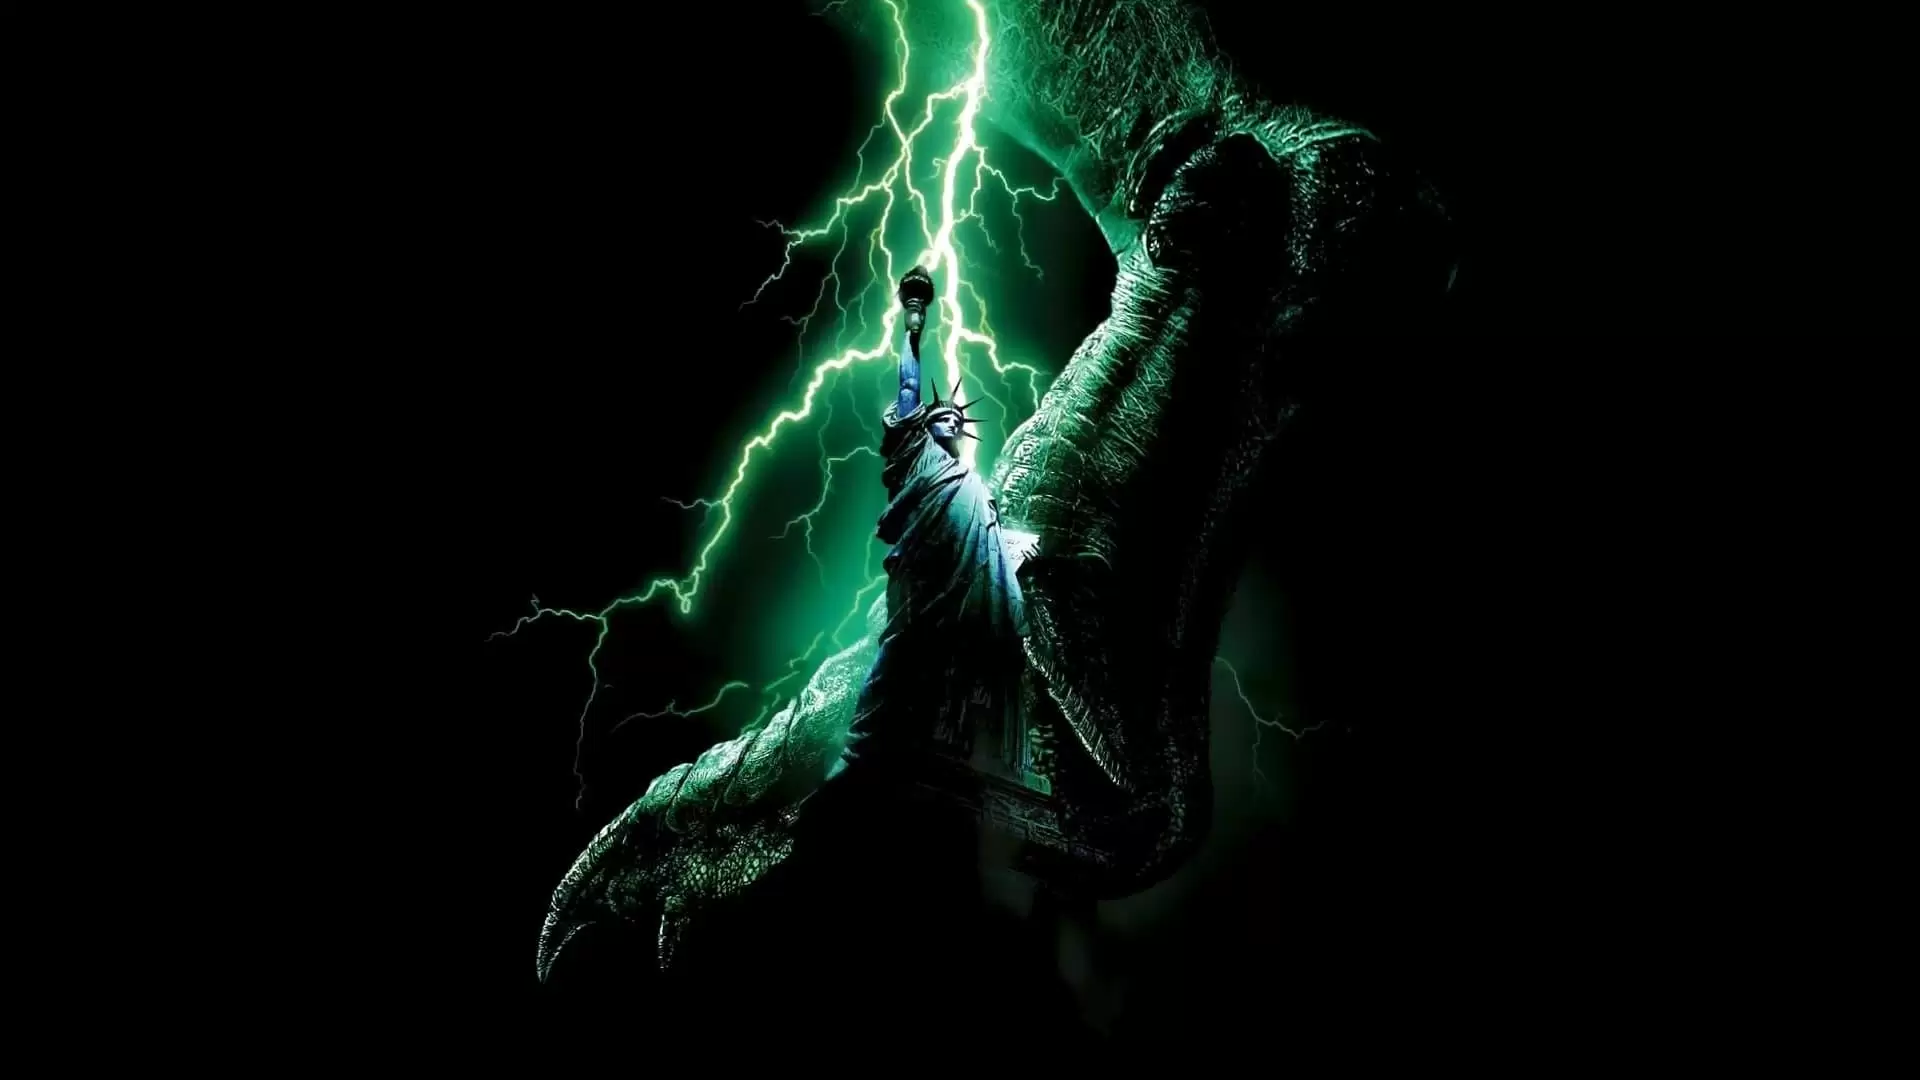 دانلود فیلم Godzilla 1998 (گودزیلا) با زیرنویس فارسی و تماشای آنلاین